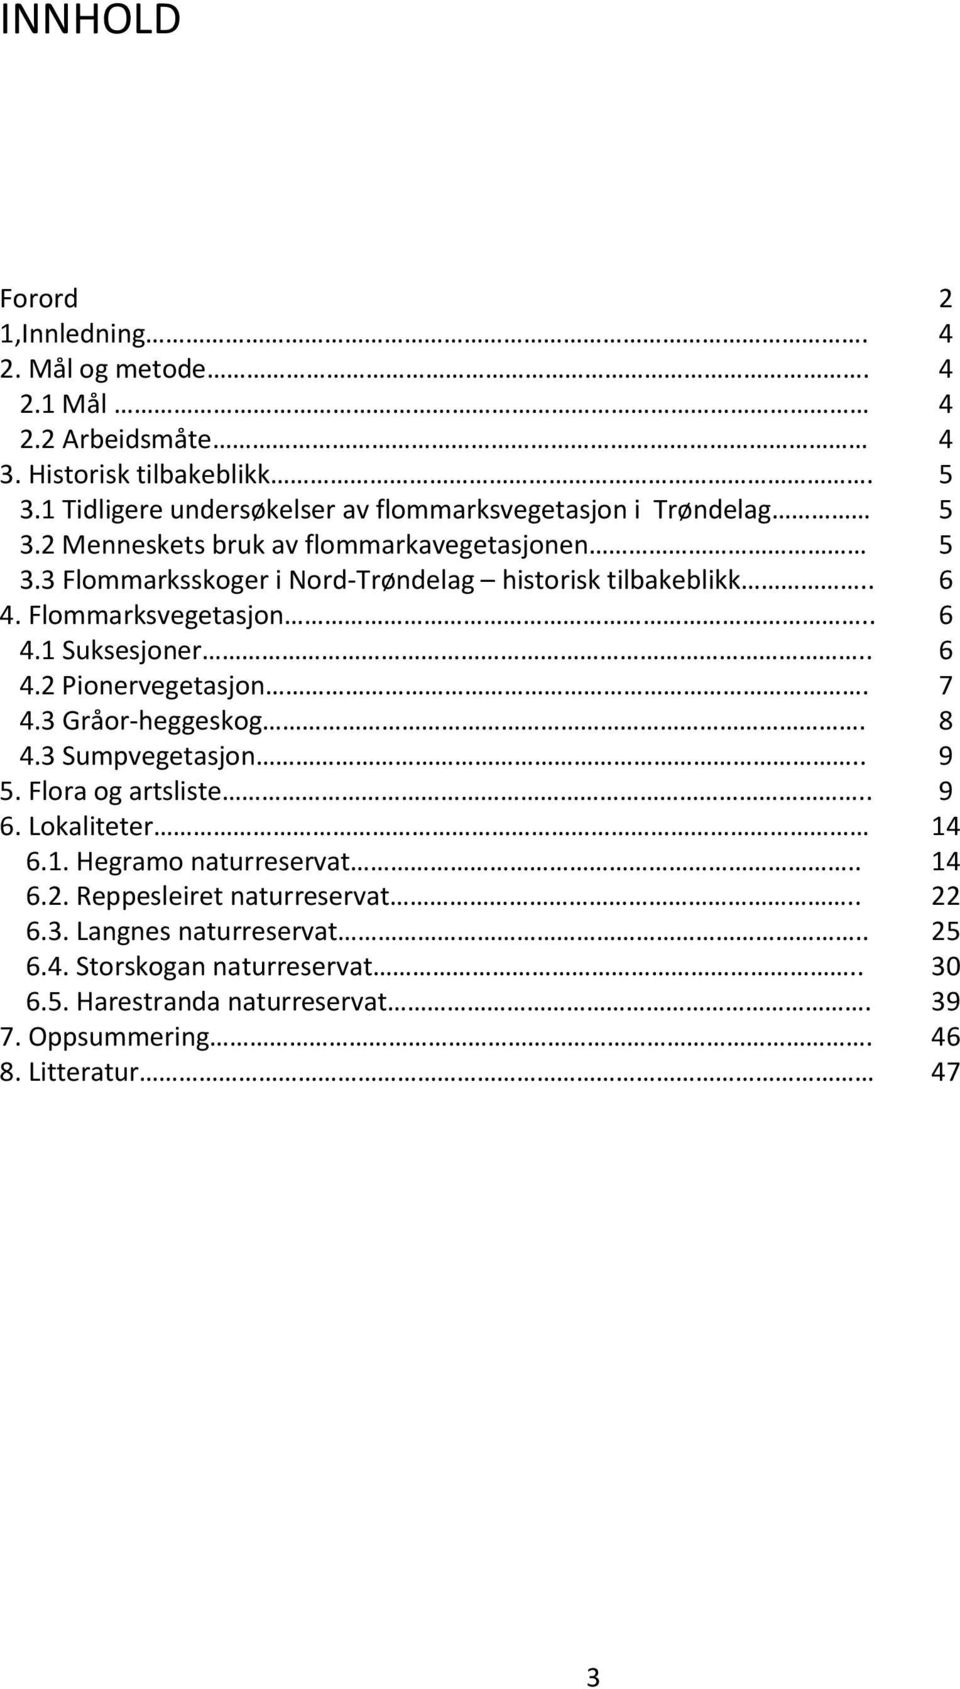 3 Flommarksskoger i Nord-Trøndelag historisk tilbakeblikk.. 6 4. Flommarksvegetasjon.. 6 4.1 Suksesjoner.. 6 4.2 Pionervegetasjon. 7 4.3 Gråor-heggeskog. 8 4.